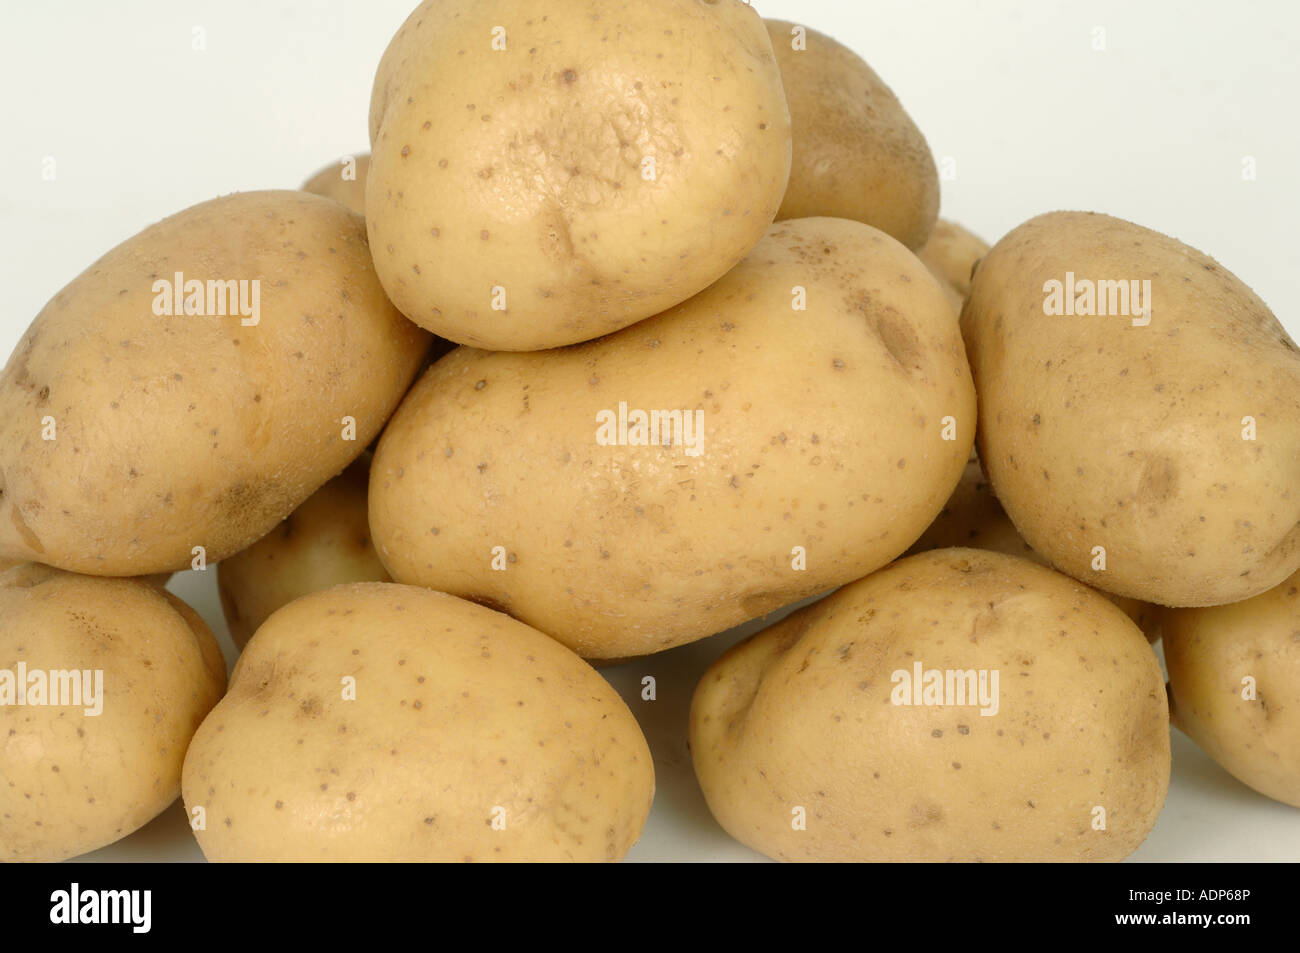 Les tubercules de pommes de terre Maris Piper ex shop ou au supermarché Banque D'Images